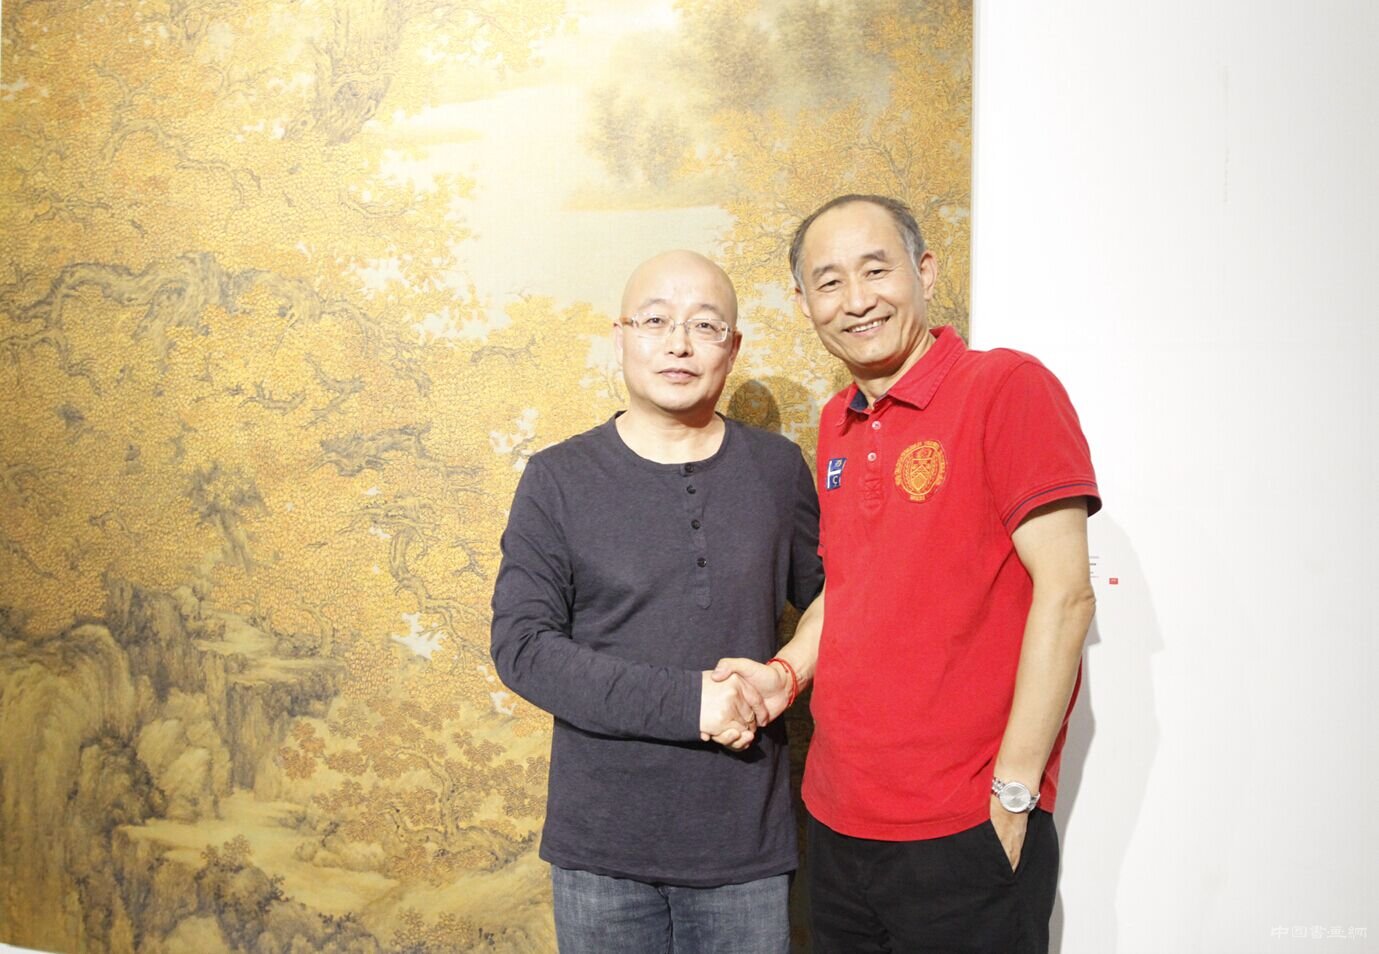 孤山远影——高惠君艺术展在798百家湖北京艺术中心成功举办